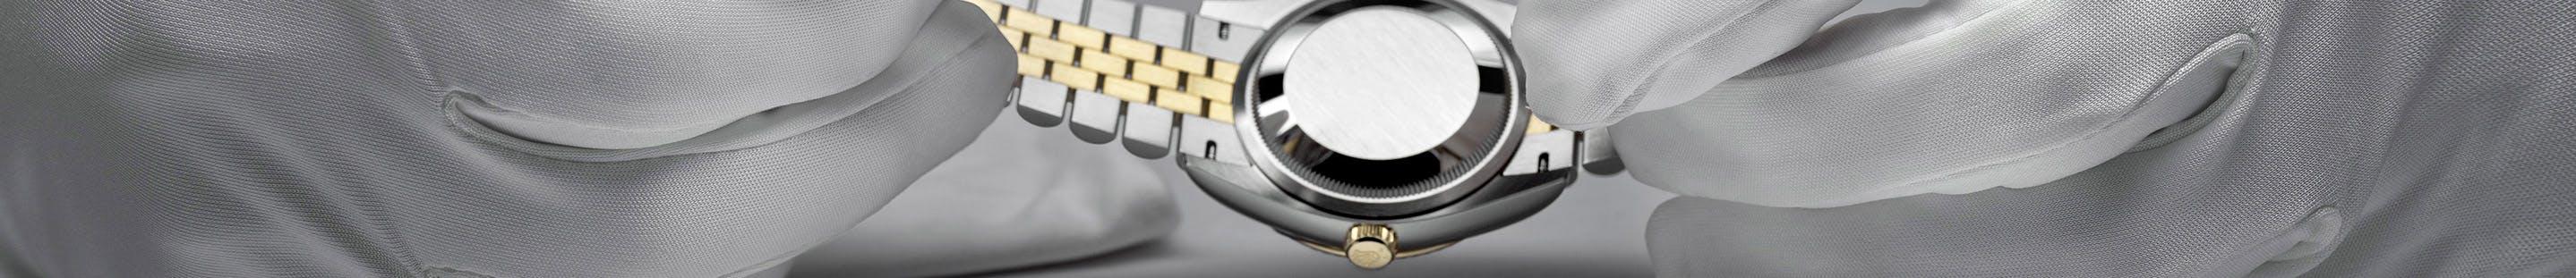 Rolex watch in gloved hands